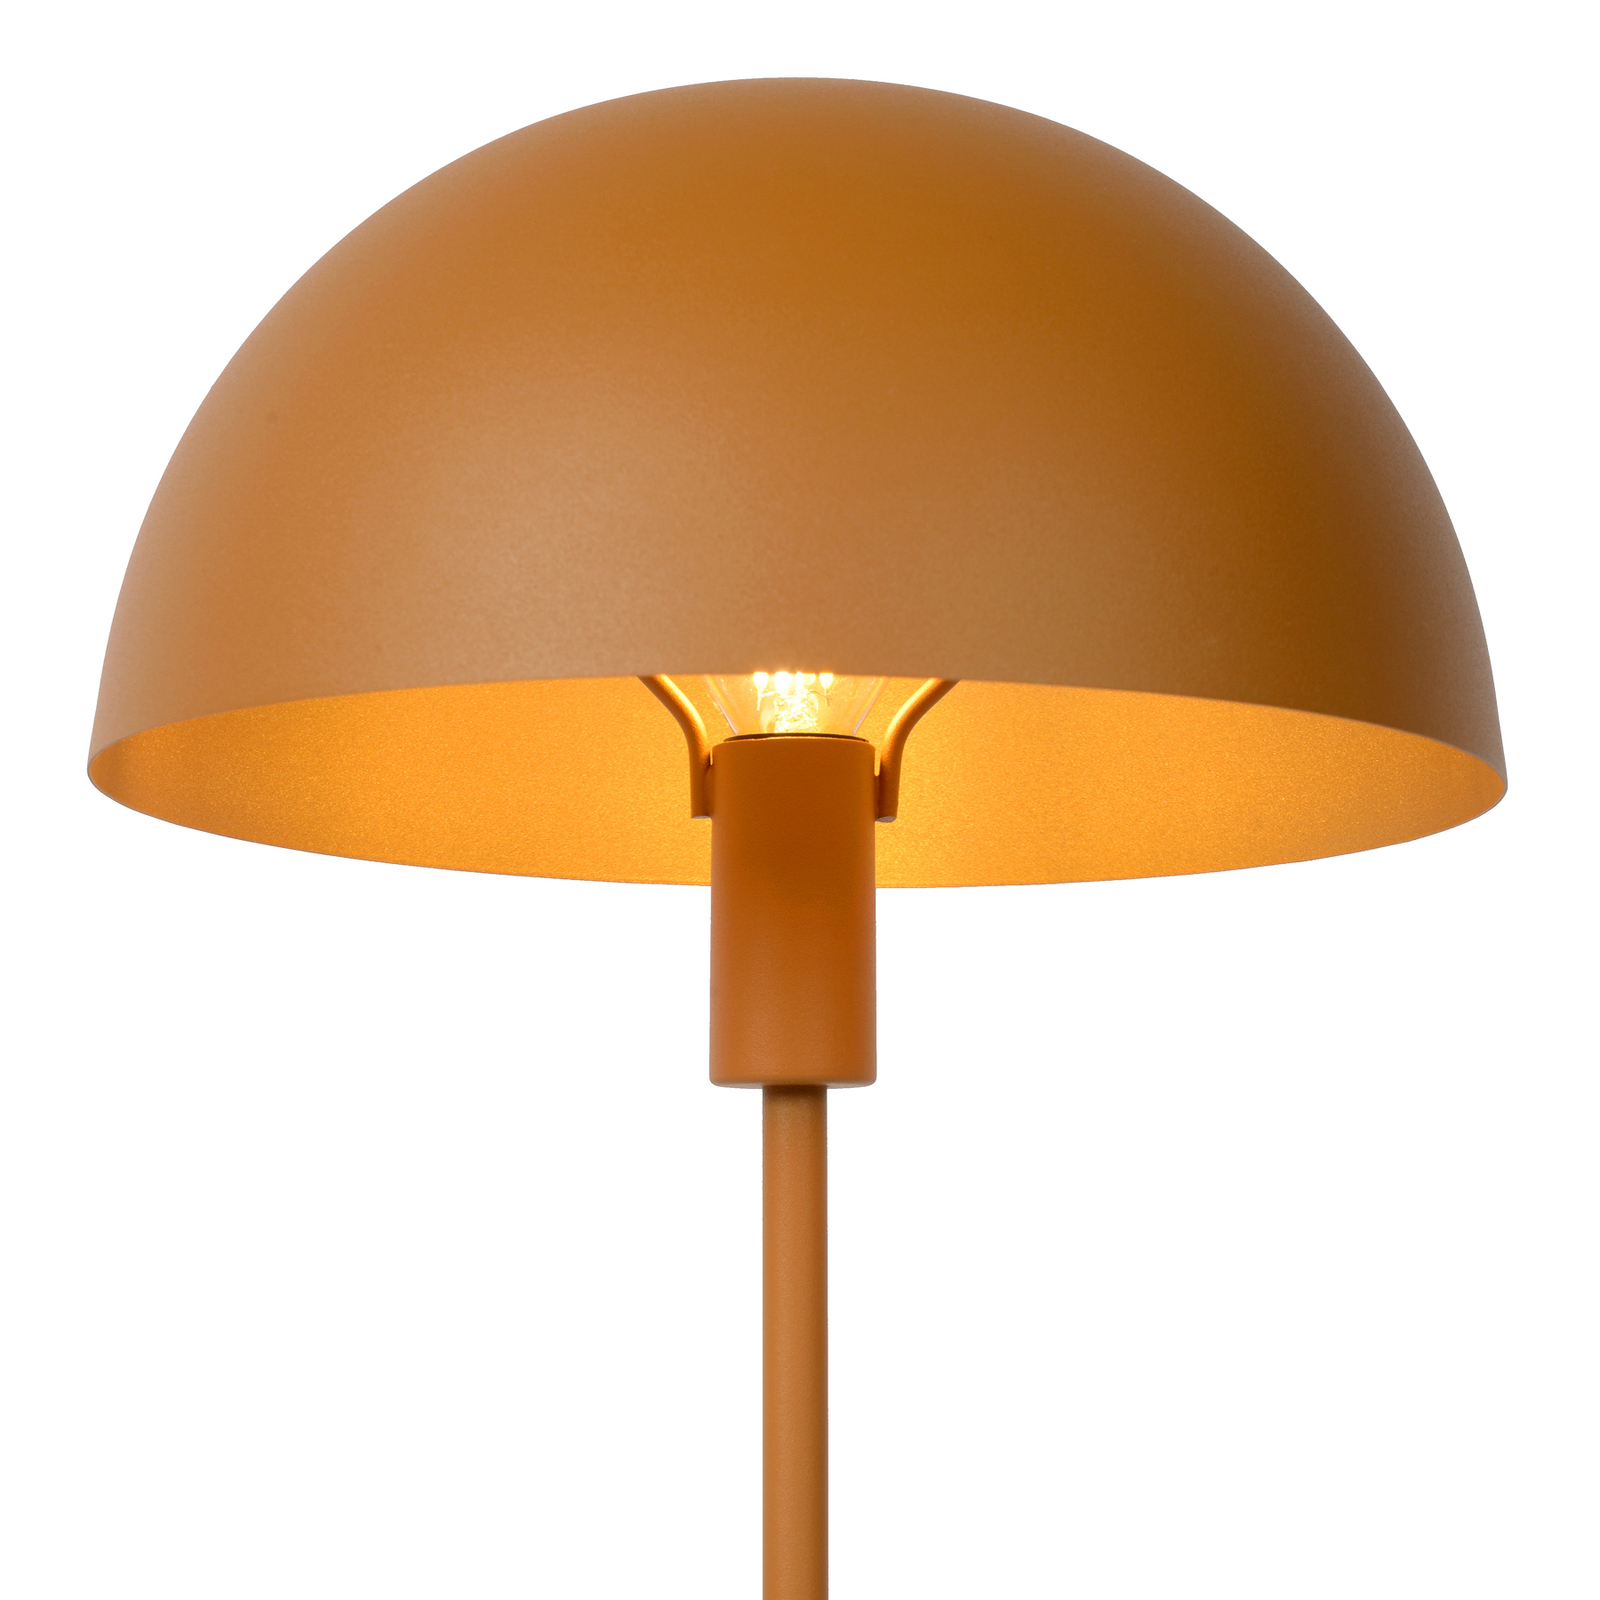 Siemon bordlampe i stål, Ø 25 cm, okkergul